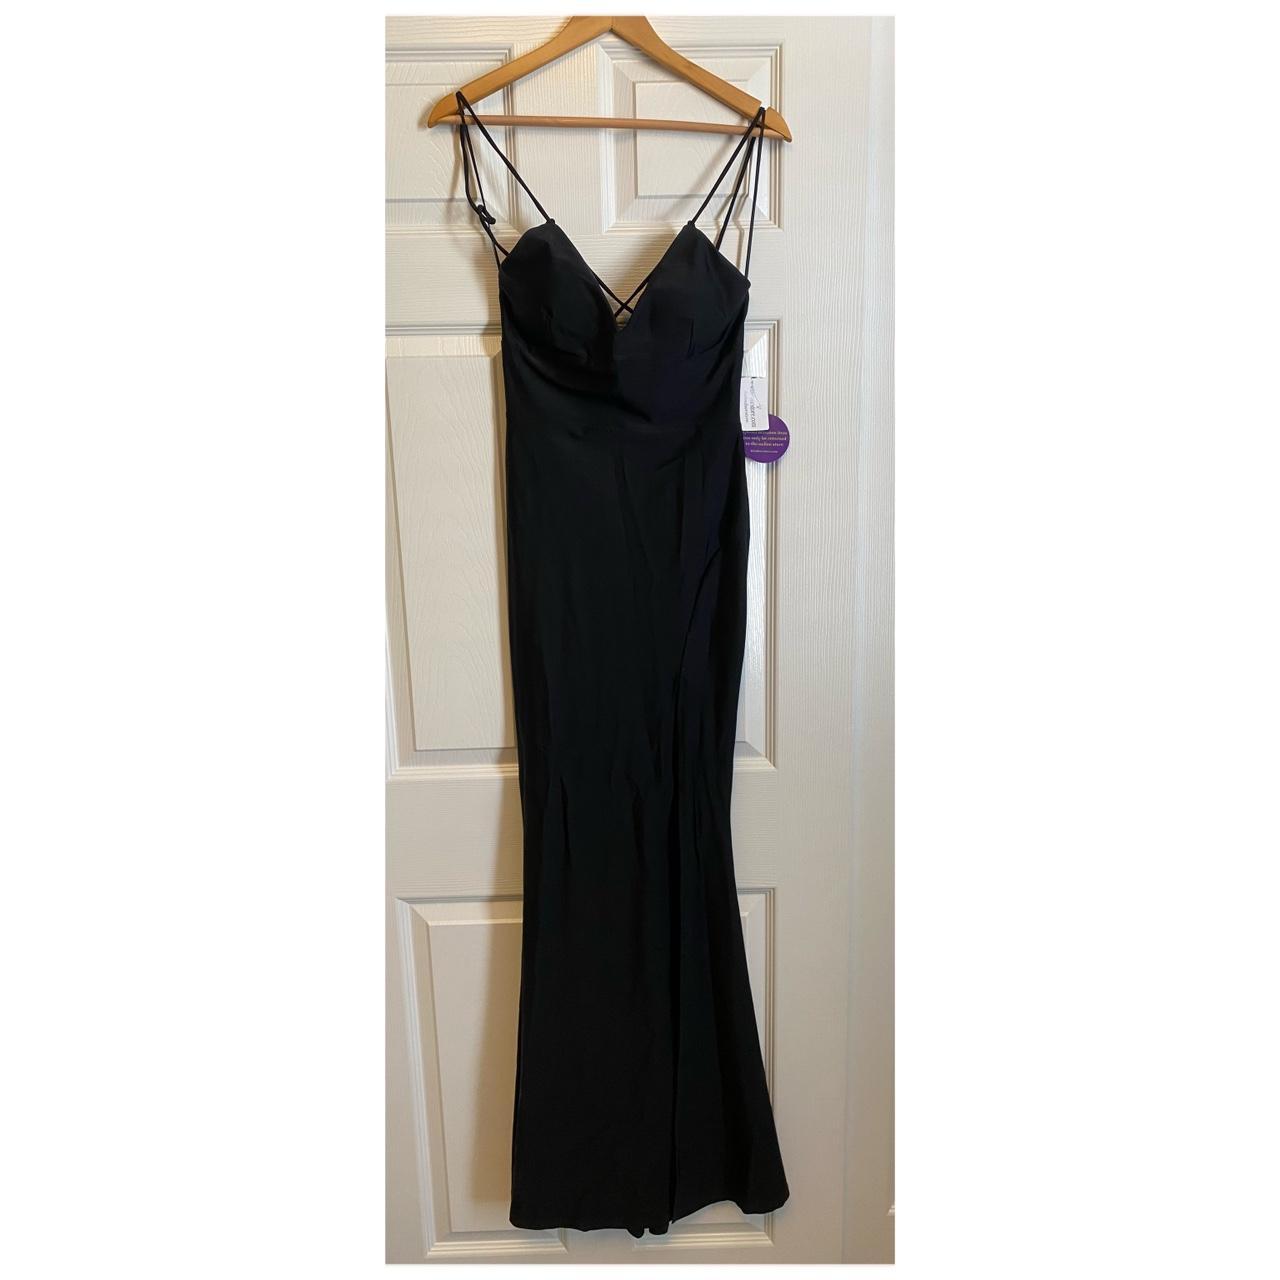 Windsor black formal dress. Form fitting with... - Depop